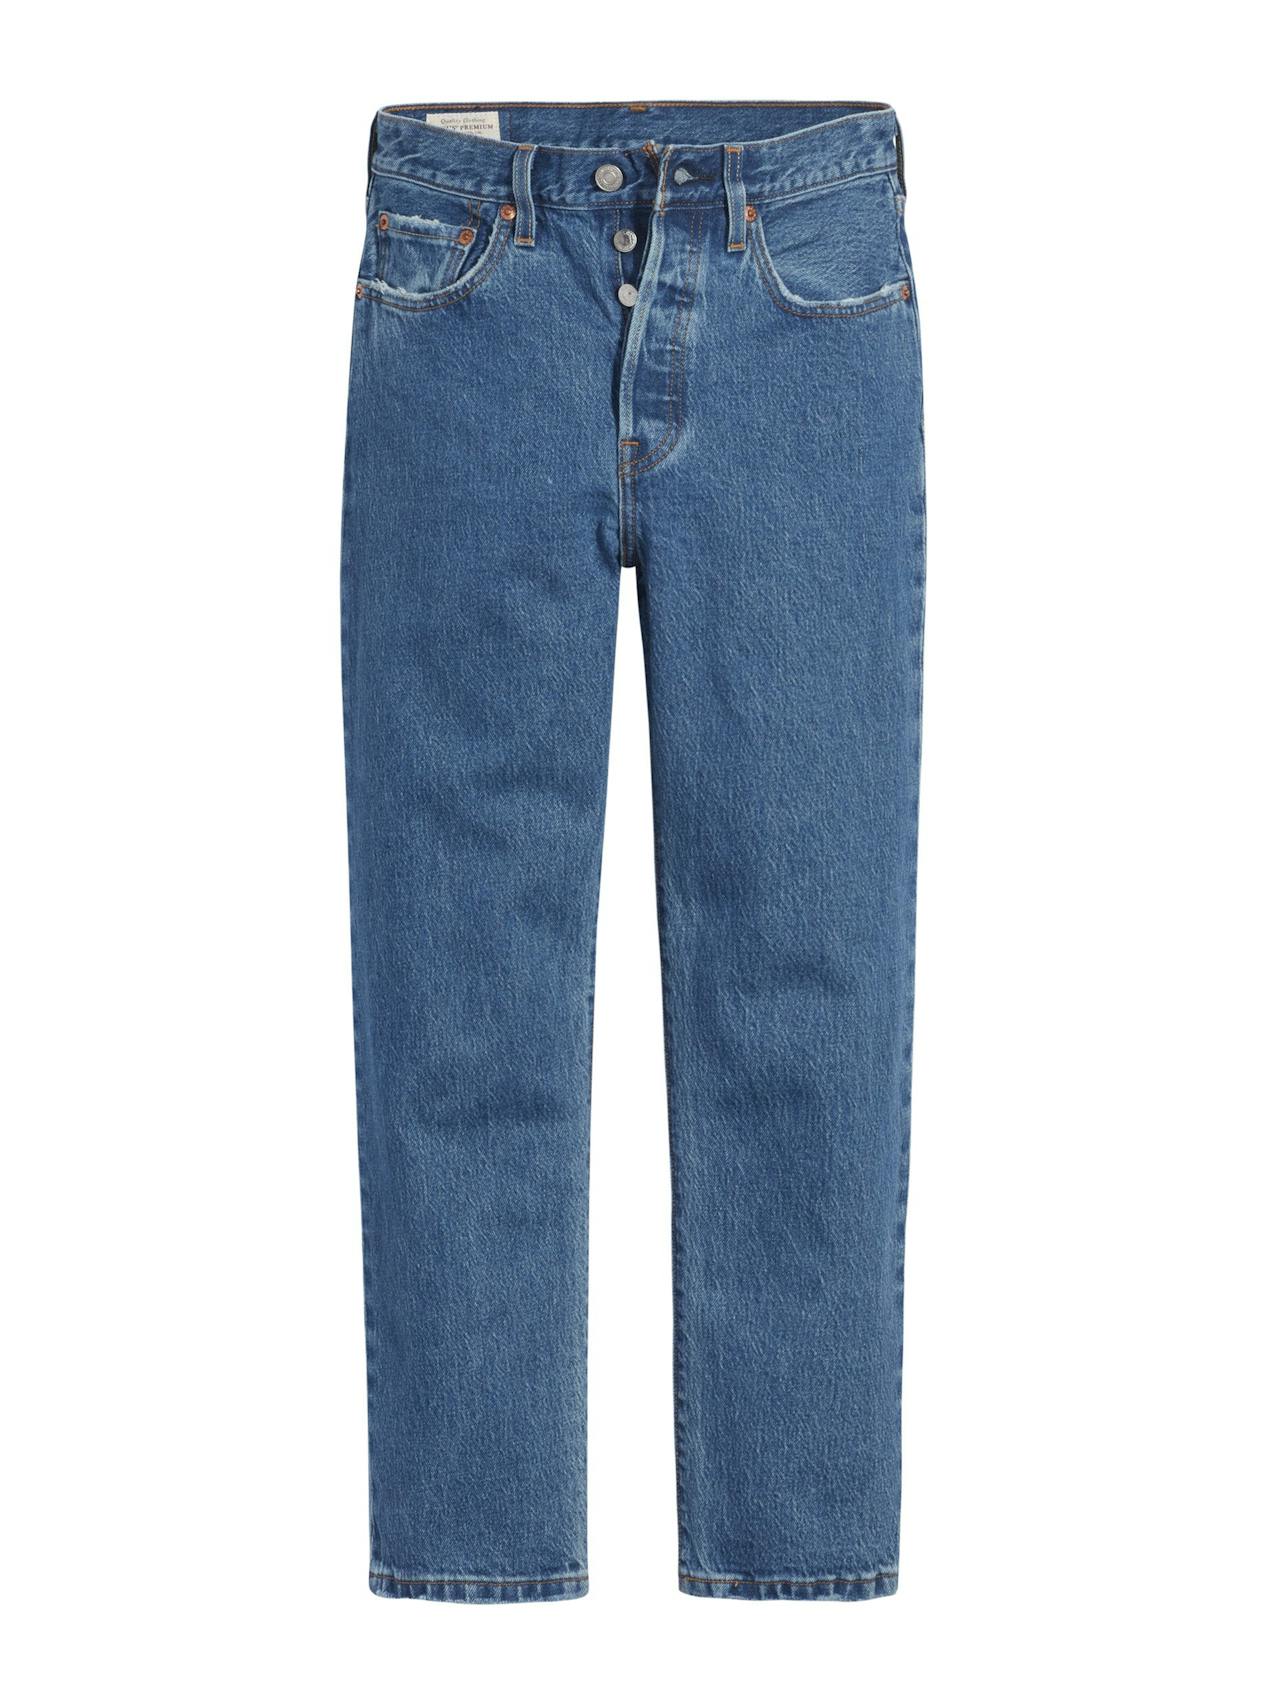 501 original jeans in Medium Indigo Stonewash